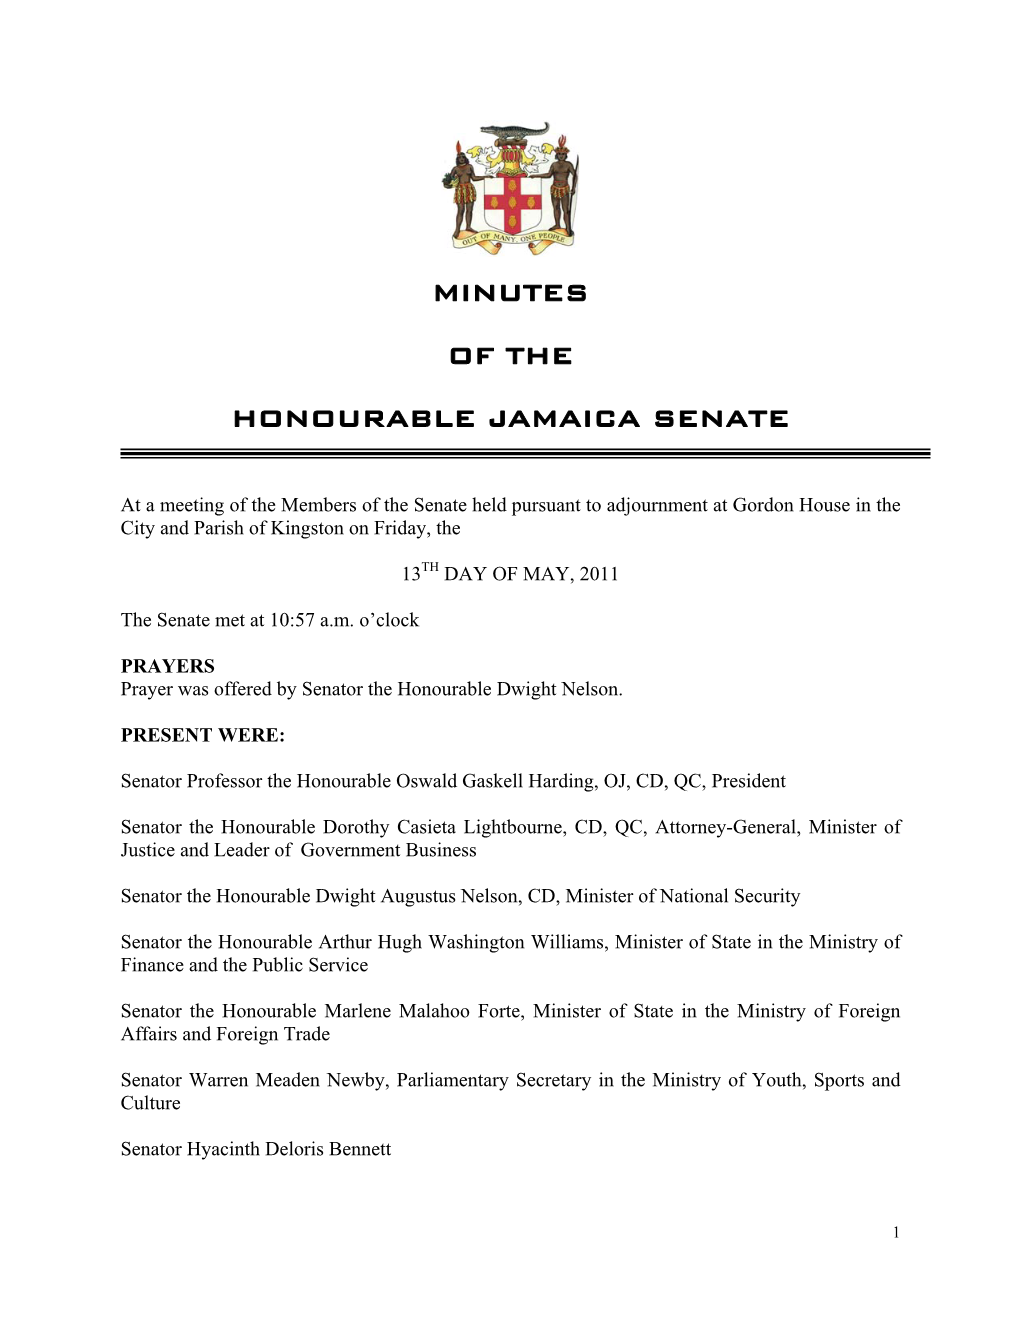 Minutes of the Honourable Jamaica Senate